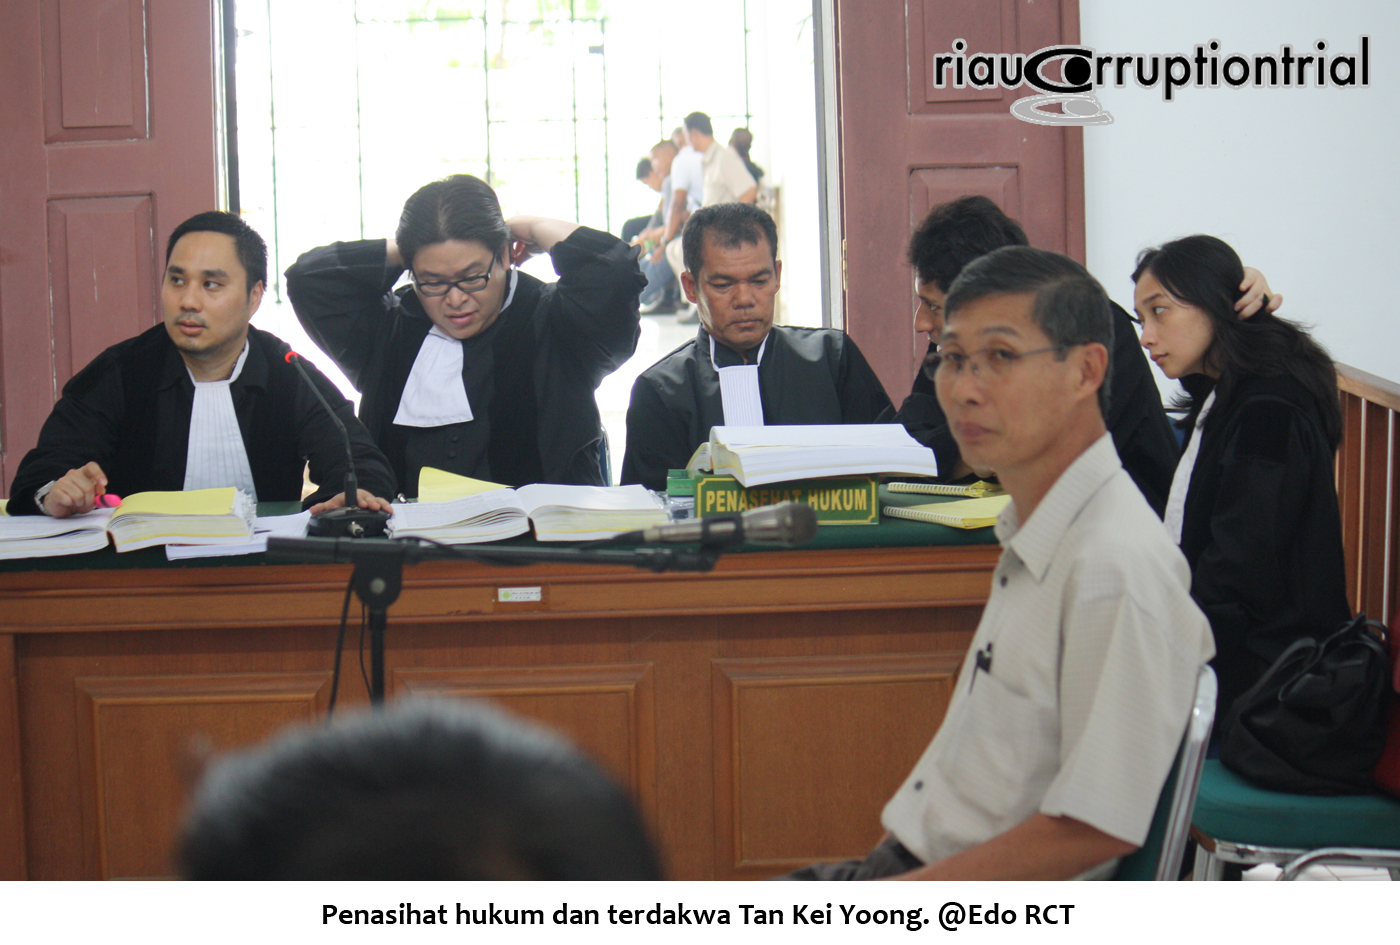 PH dan terdakwa Tan Kei Yoong